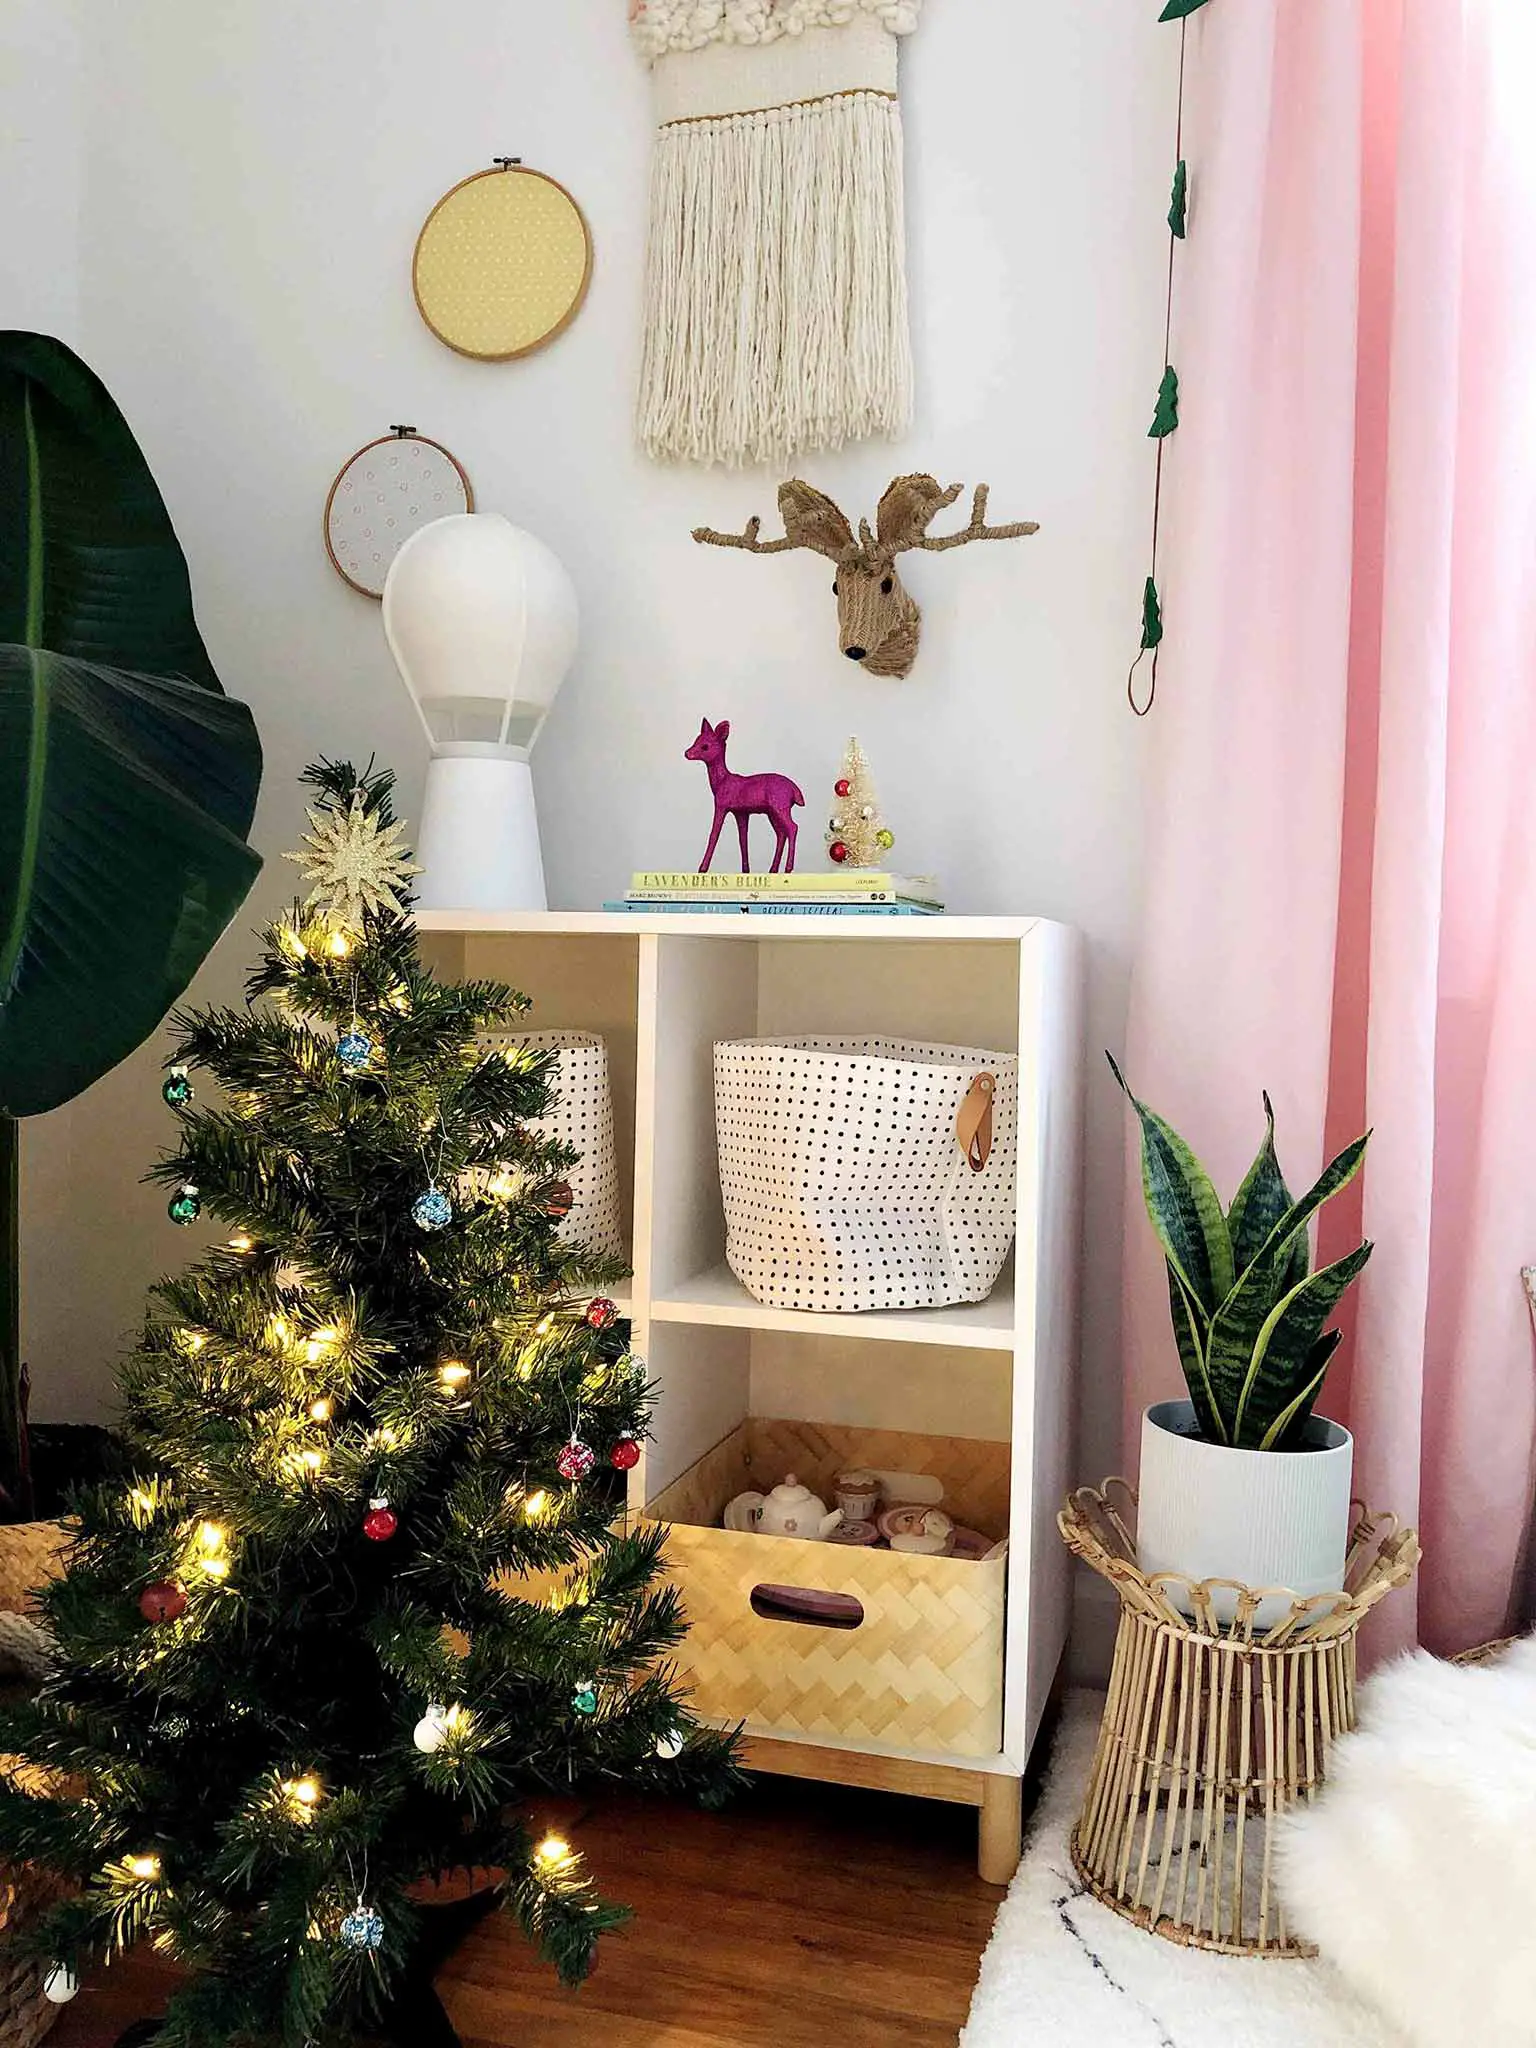 Kids room Christmas decor - Simple Yet Cozy Christmas Decor - That Homebird Life Blog #christmasdecor #christmasinspiration